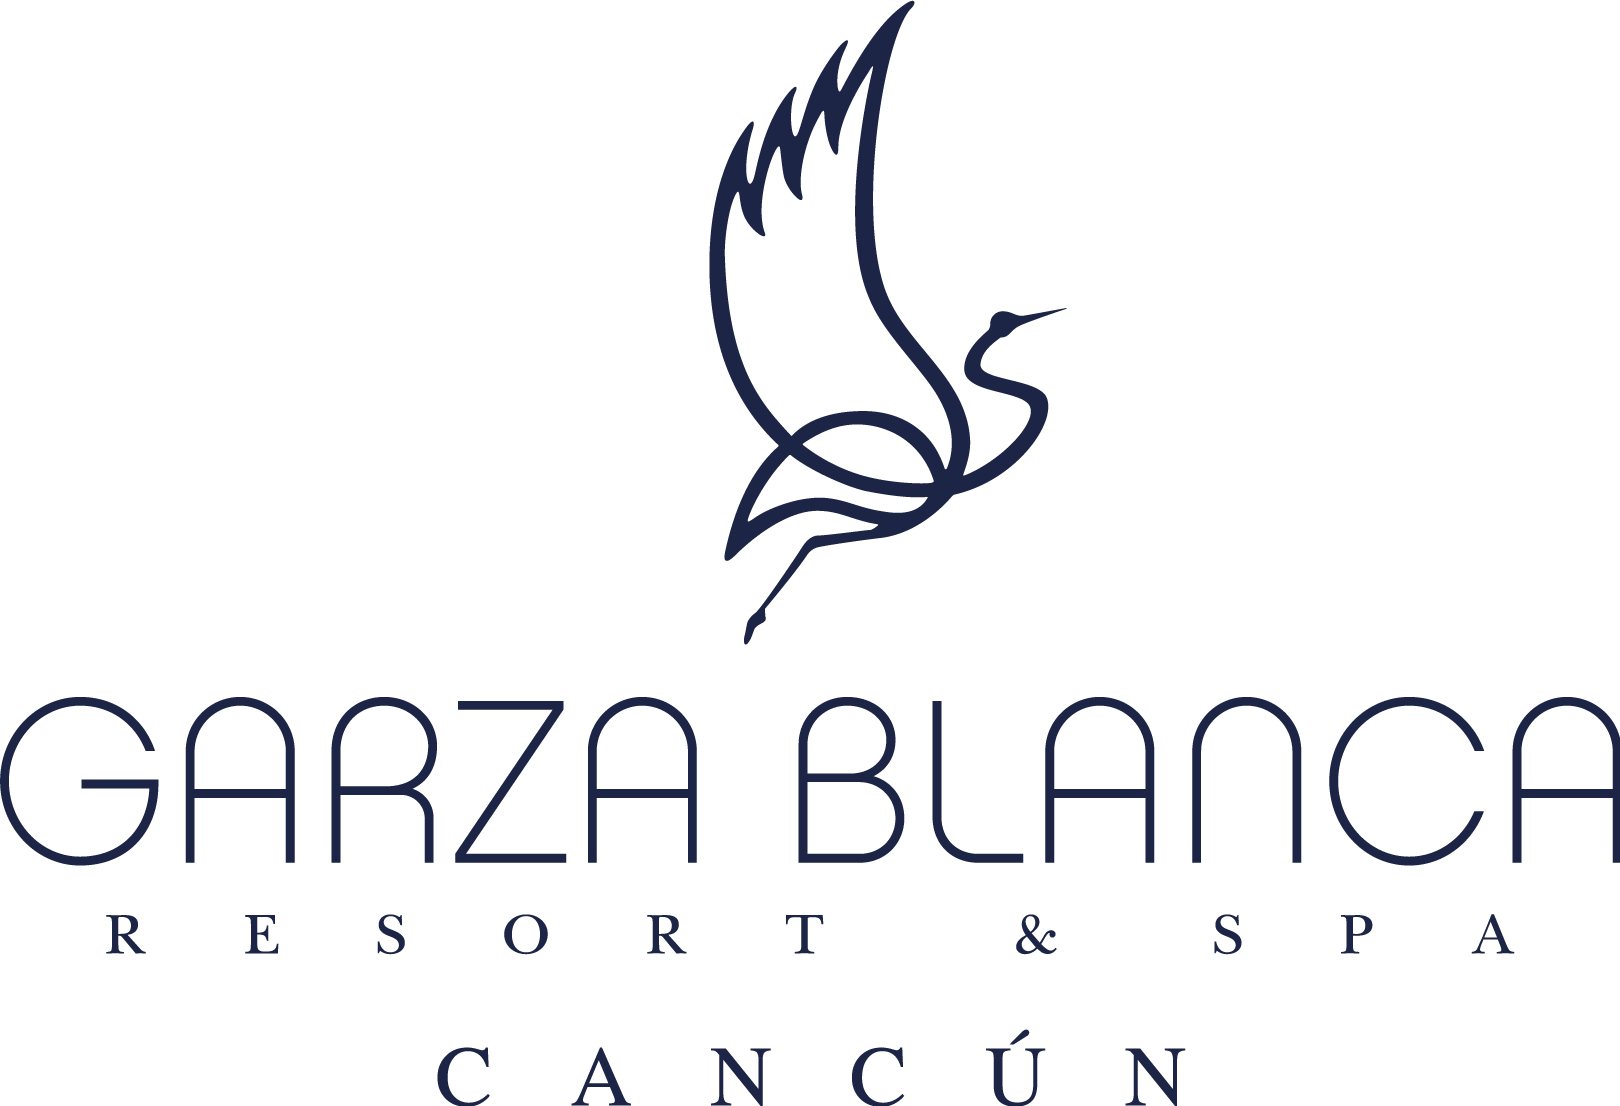 Garza Blanca Resort & Spa Cancun Logo